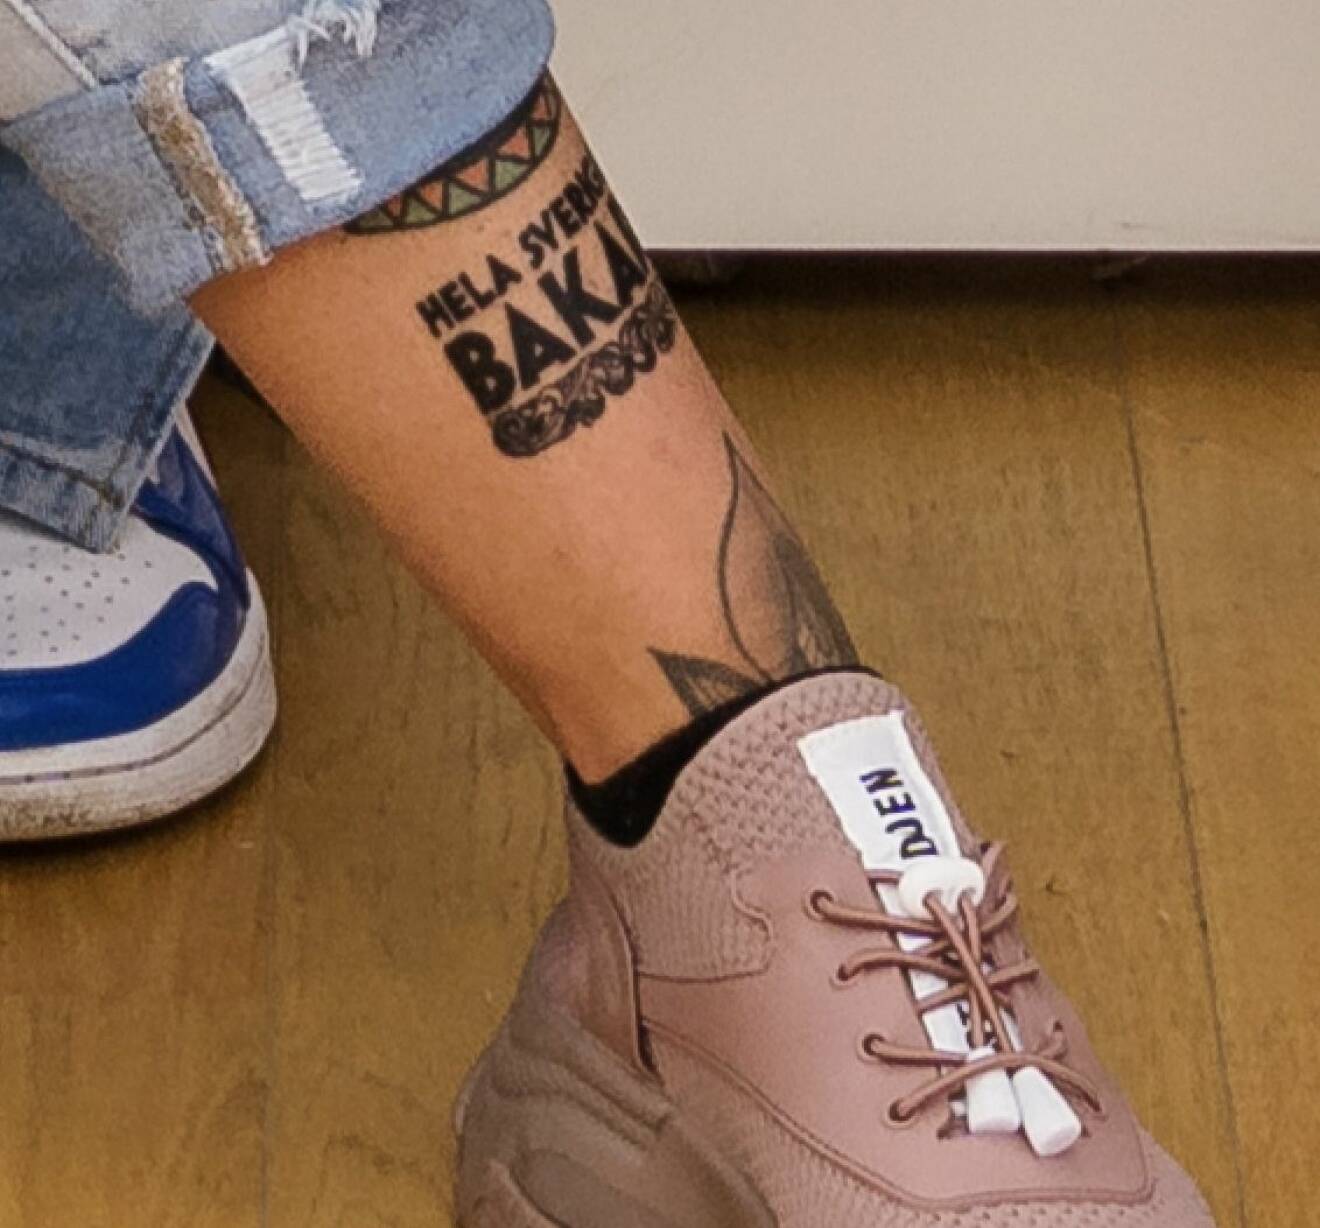 Hela Sverige bakar-tatuering på Andrea Asks ben